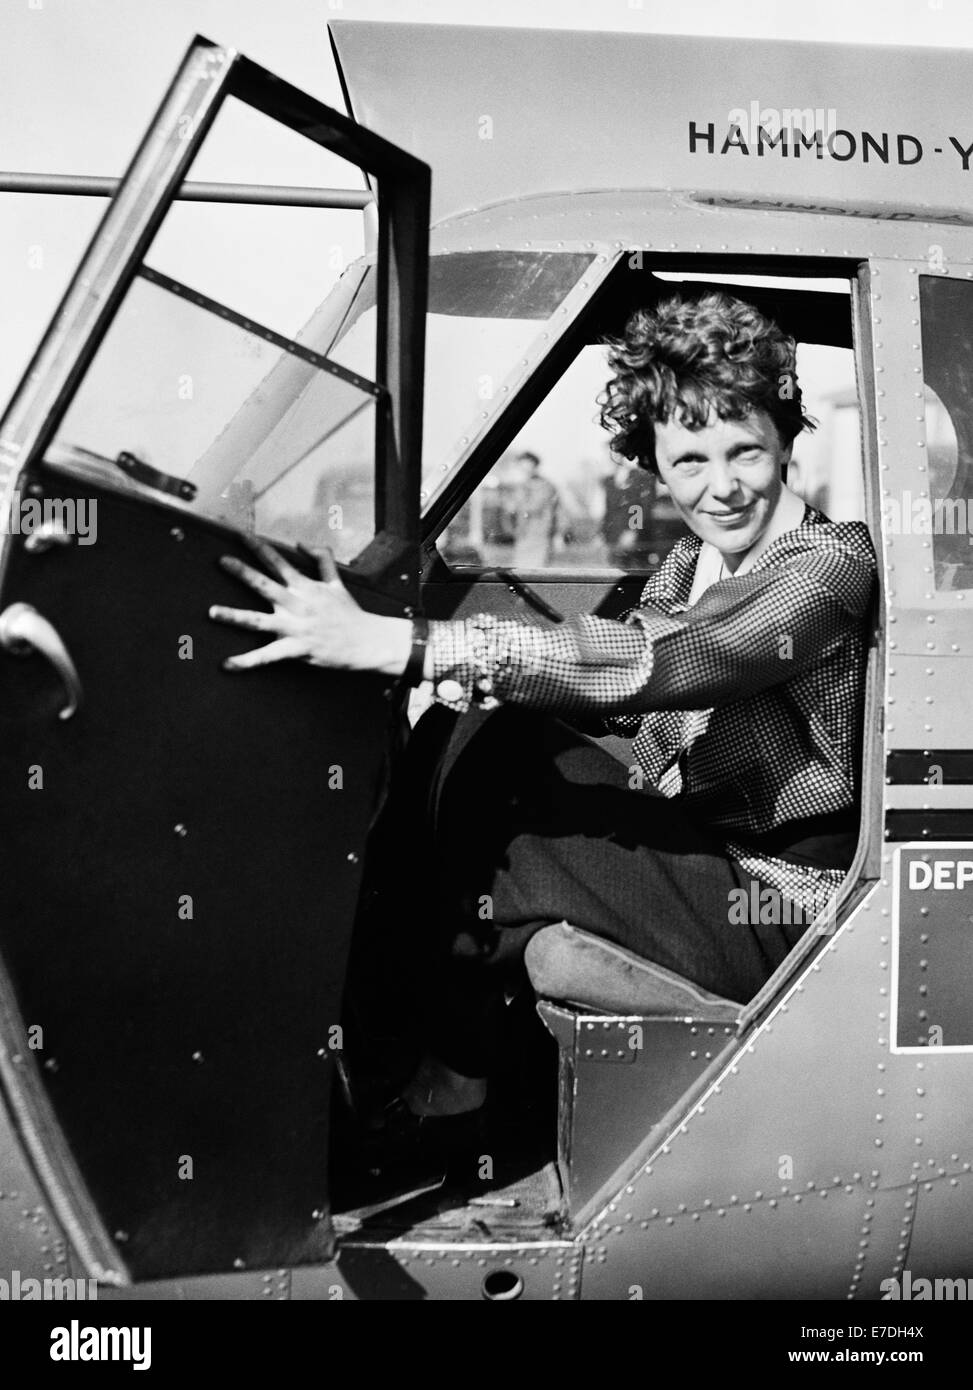 Foto d'epoca della pioniera e autrice dell'aviazione americana Amelia Earhart (1897 – dichiarata morta nel 1939) – Earthart e il suo navigatore Fred Noonan sono scomparsi nel 1937 mentre stava cercando di diventare la prima donna a completare un volo circumnavigazionale del globo. Earhart è raffigurato nel 1936 seduto nel pozzetto di un aereo del Dipartimento del Commercio degli Stati Uniti. Foto Stock